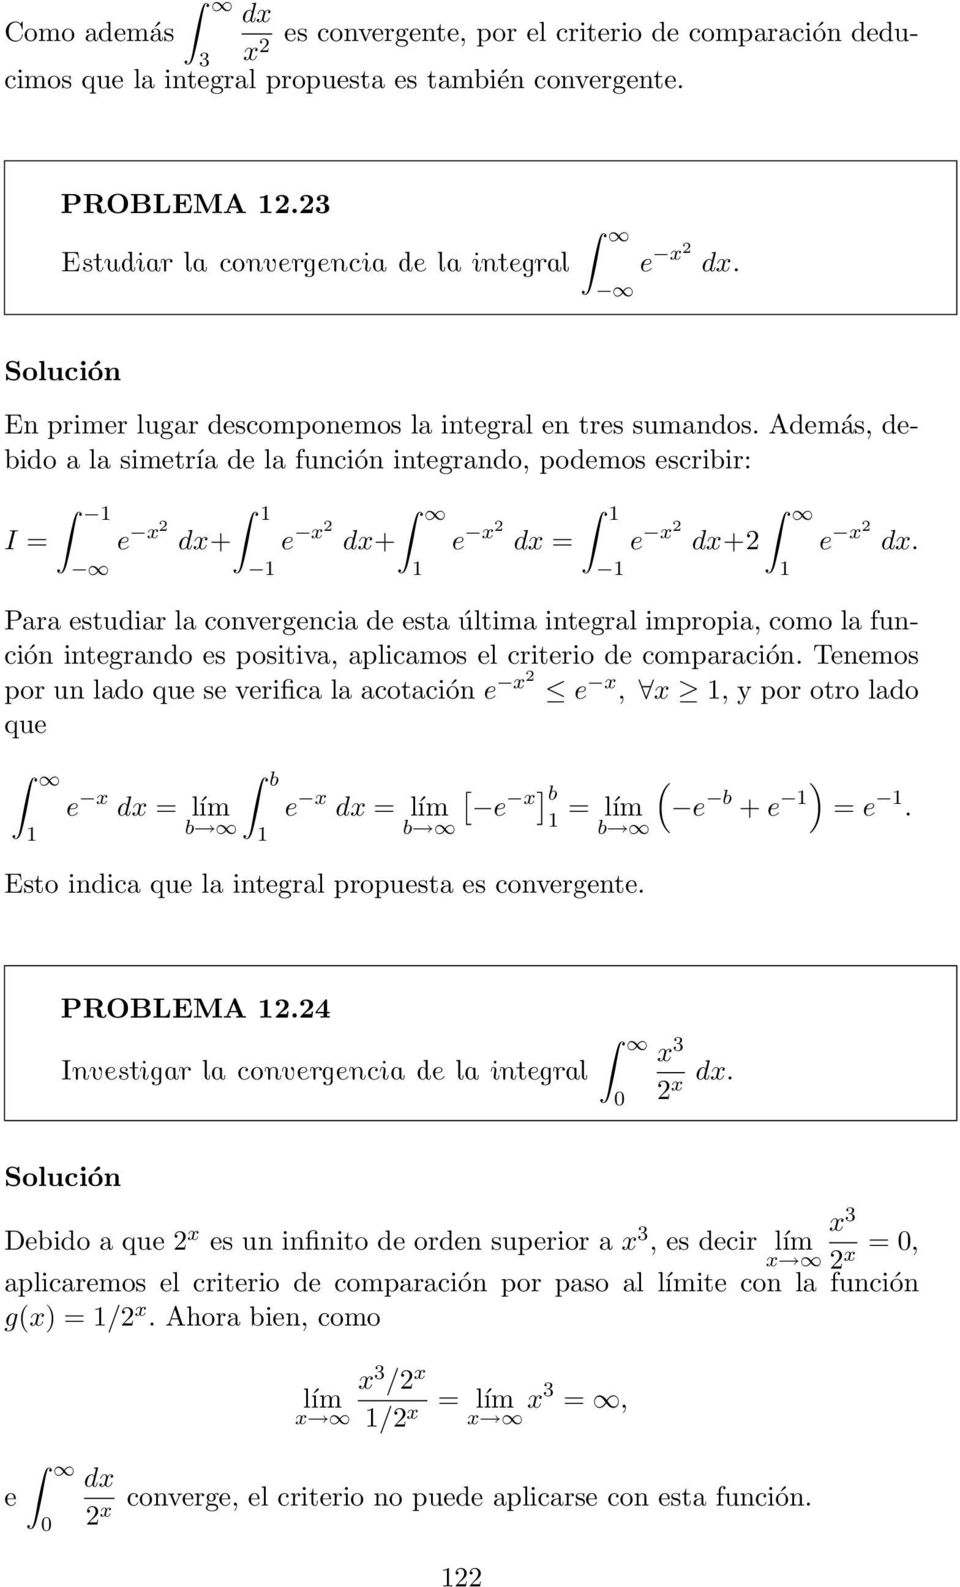 Pr estudir l convergenci de est últim integrl impropi, como l función integrndo es positiv, plicmos el criterio de comprción.